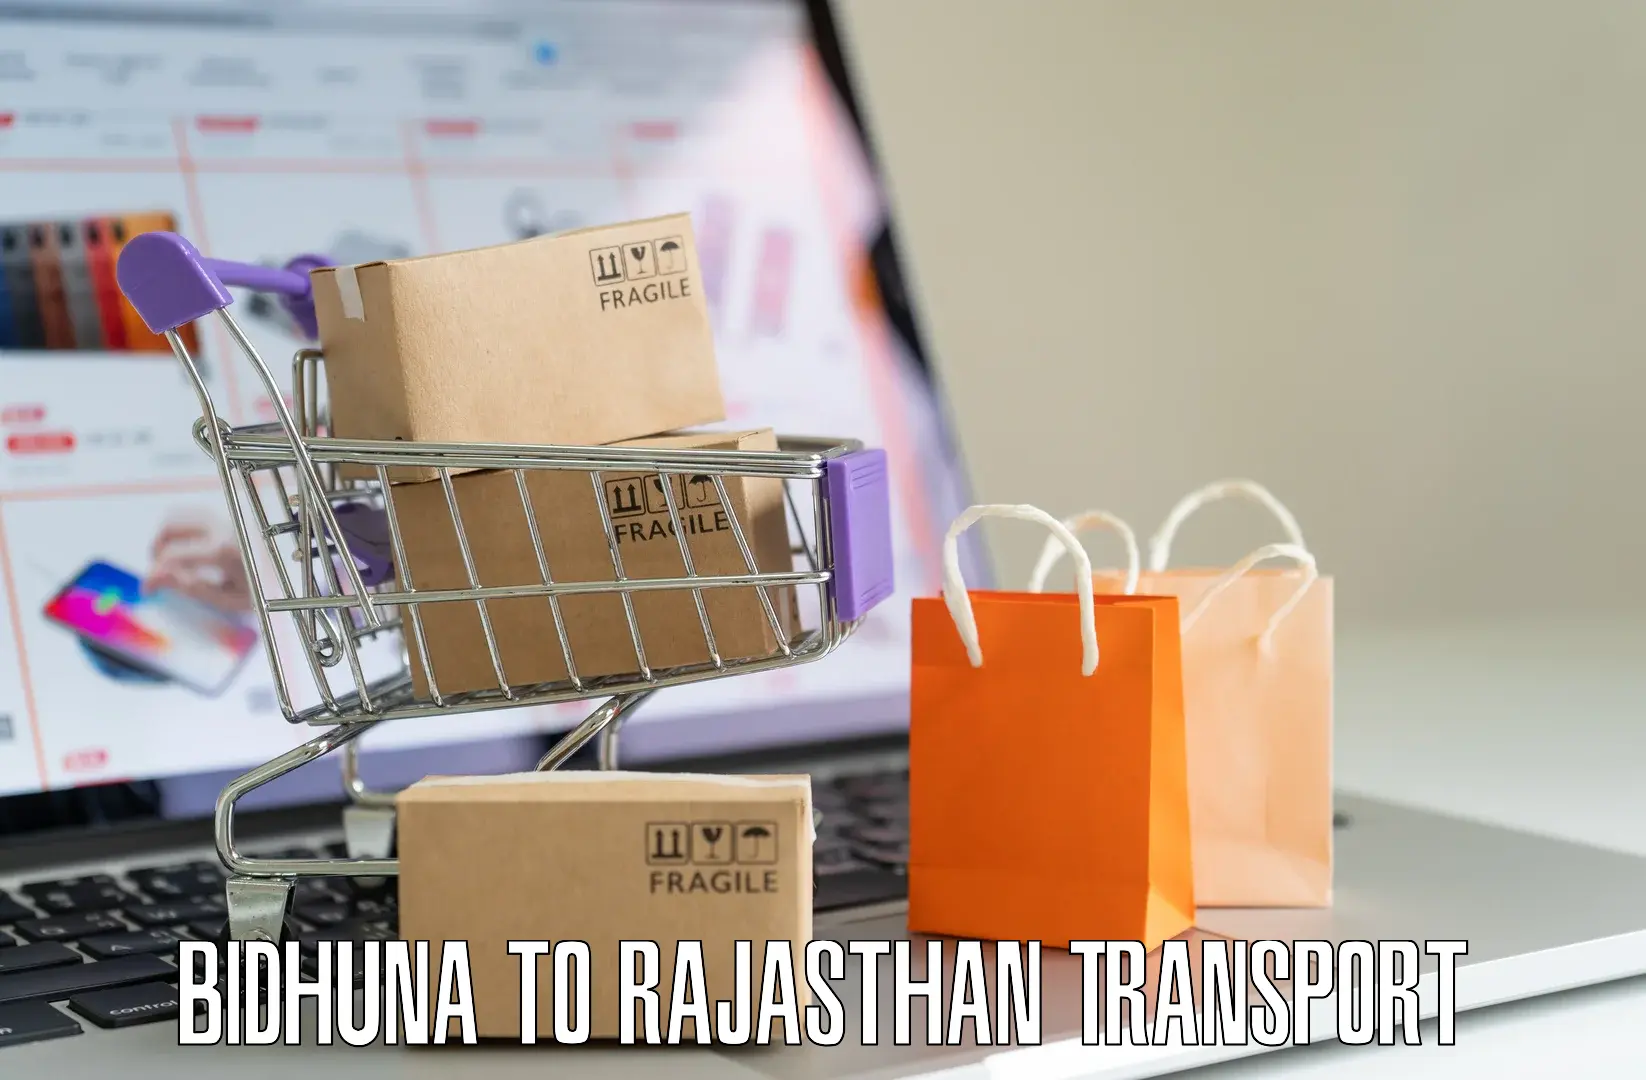 Transport in sharing Bidhuna to Pratapgarh Rajasthan